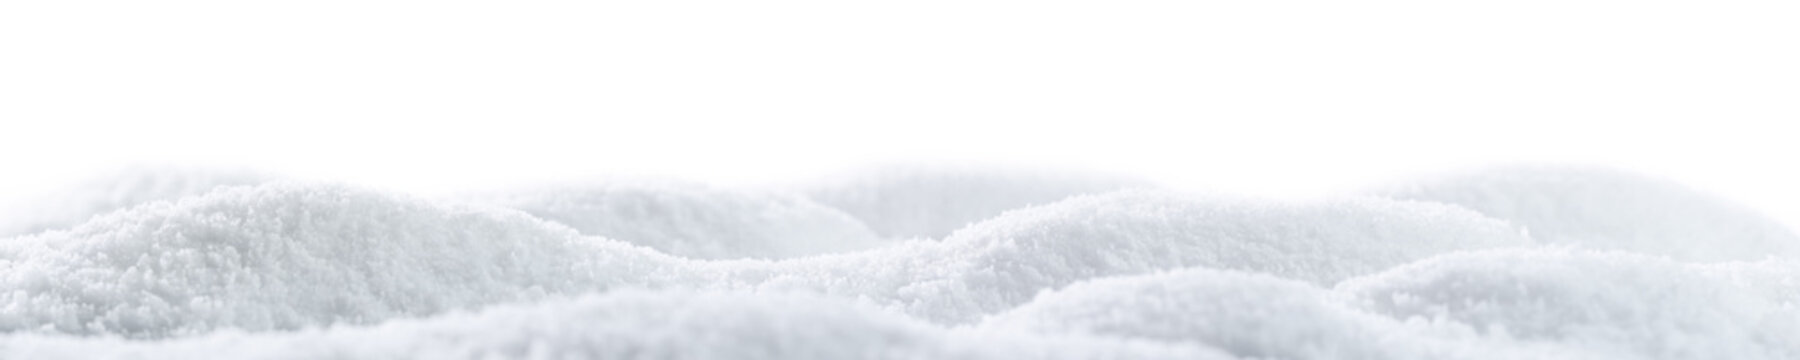 Banner of sparkling fluffy white snow hills. Wintertime snow border.